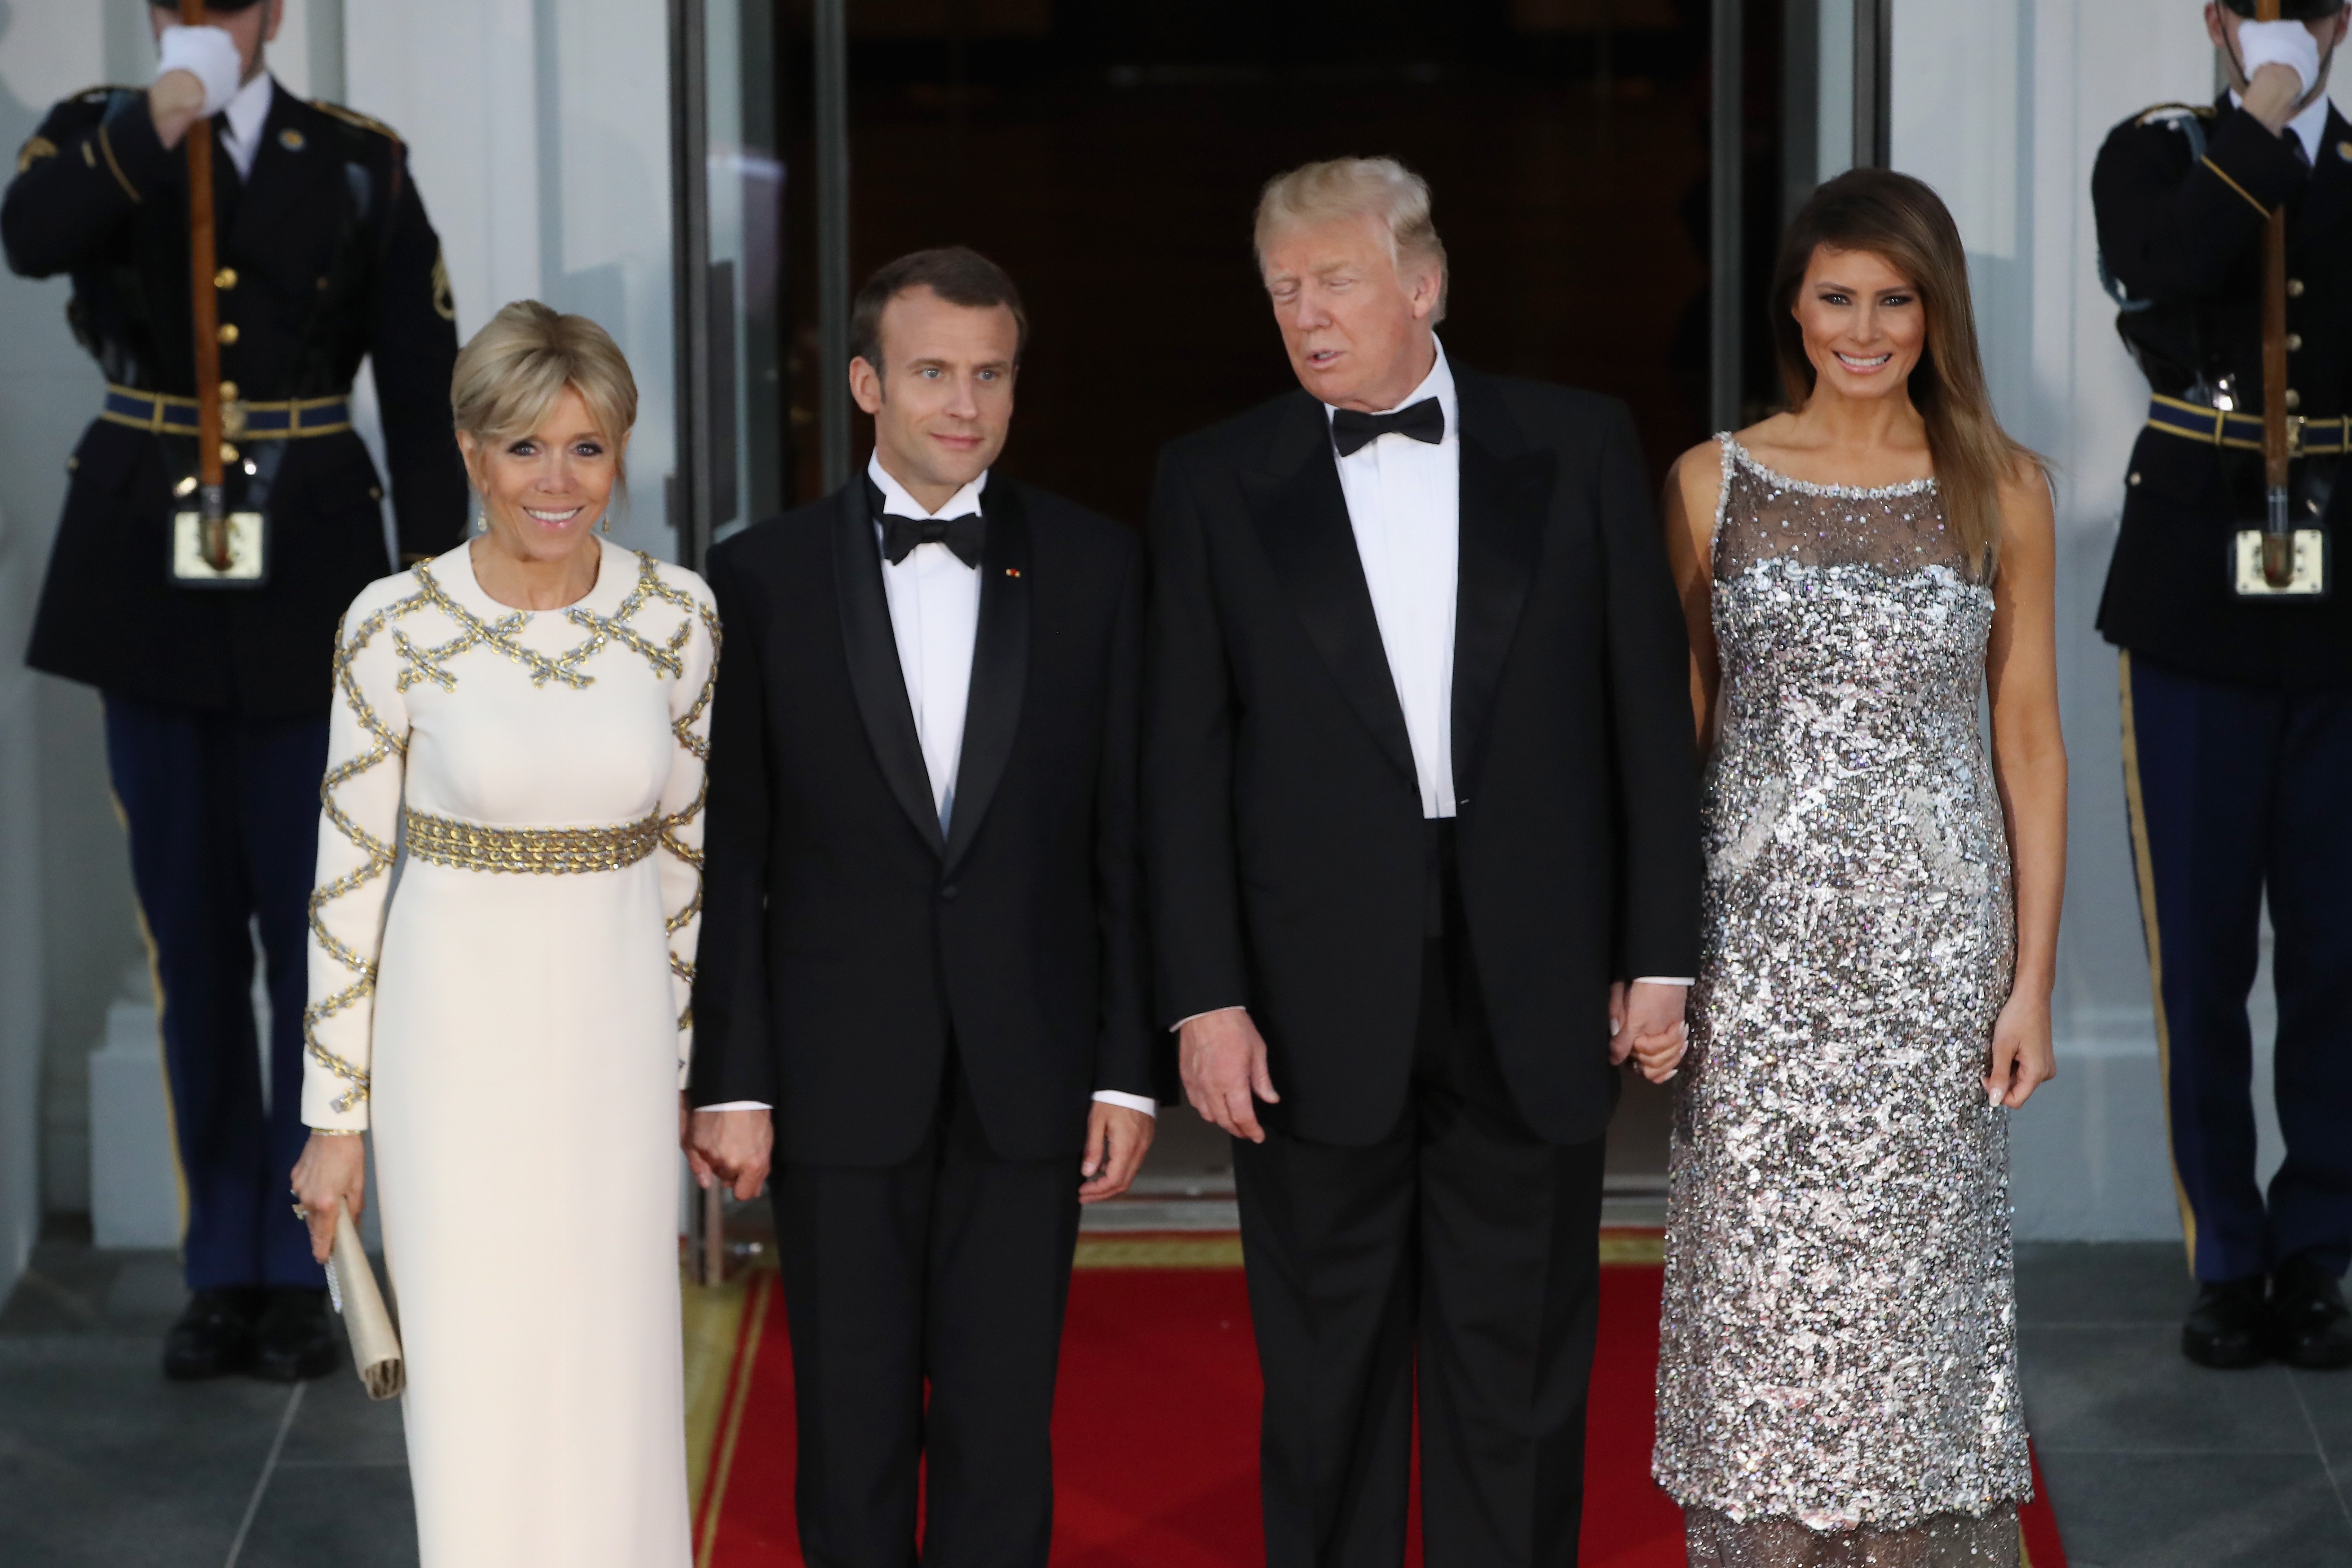 Le Président Trump et la Première Dame organisent un dîner d'État pour le Président français Macron et Mme Macron à la Maison Blanche, le 24 avril 2018 à Washington, DC. | Photo : Getty Images